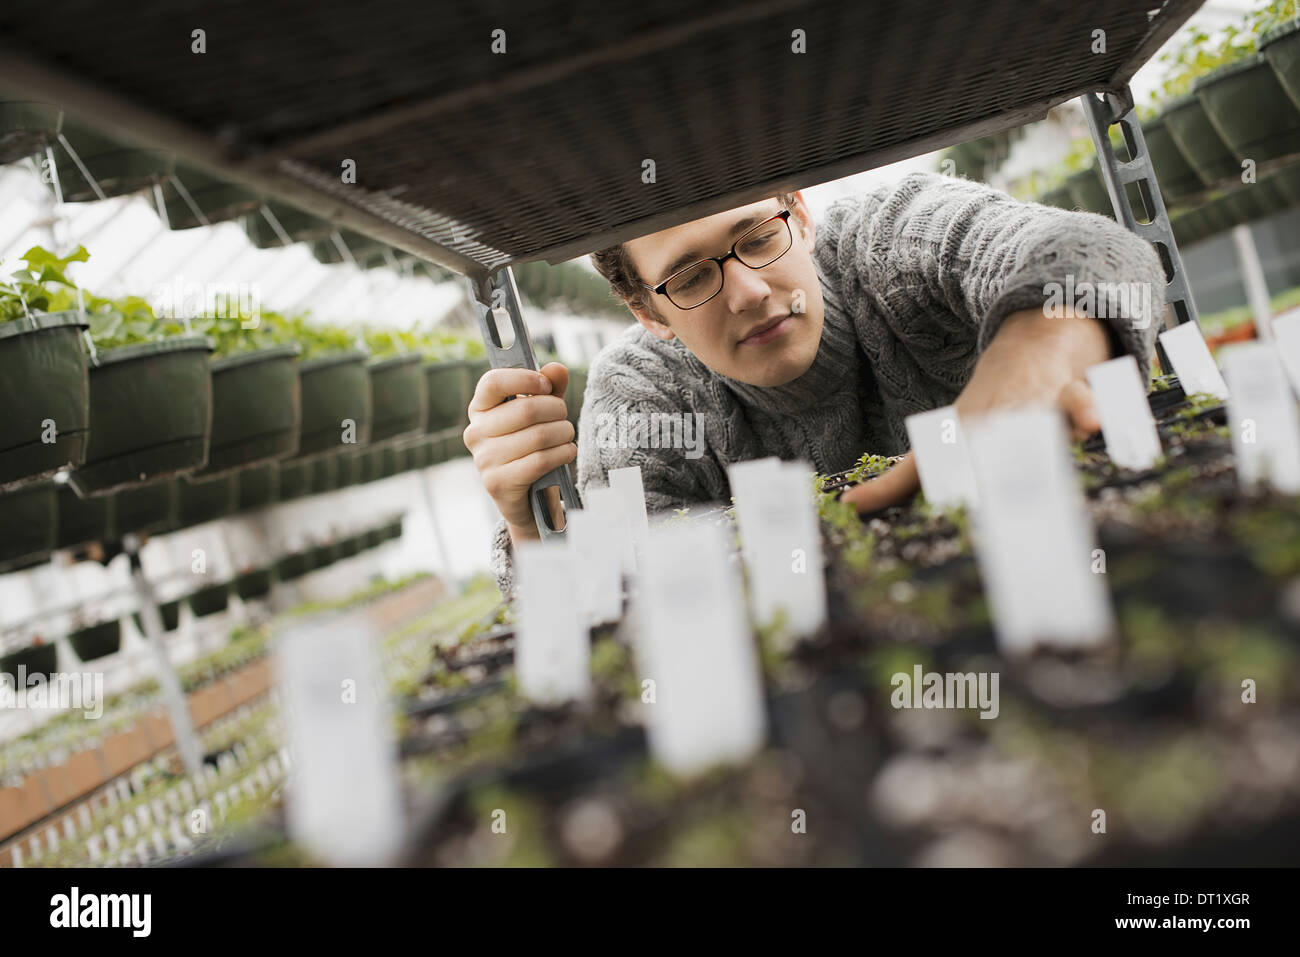 La crescita a molla in un organico vivaio un uomo controllare i vassoi di piantine su un carrello Foto Stock